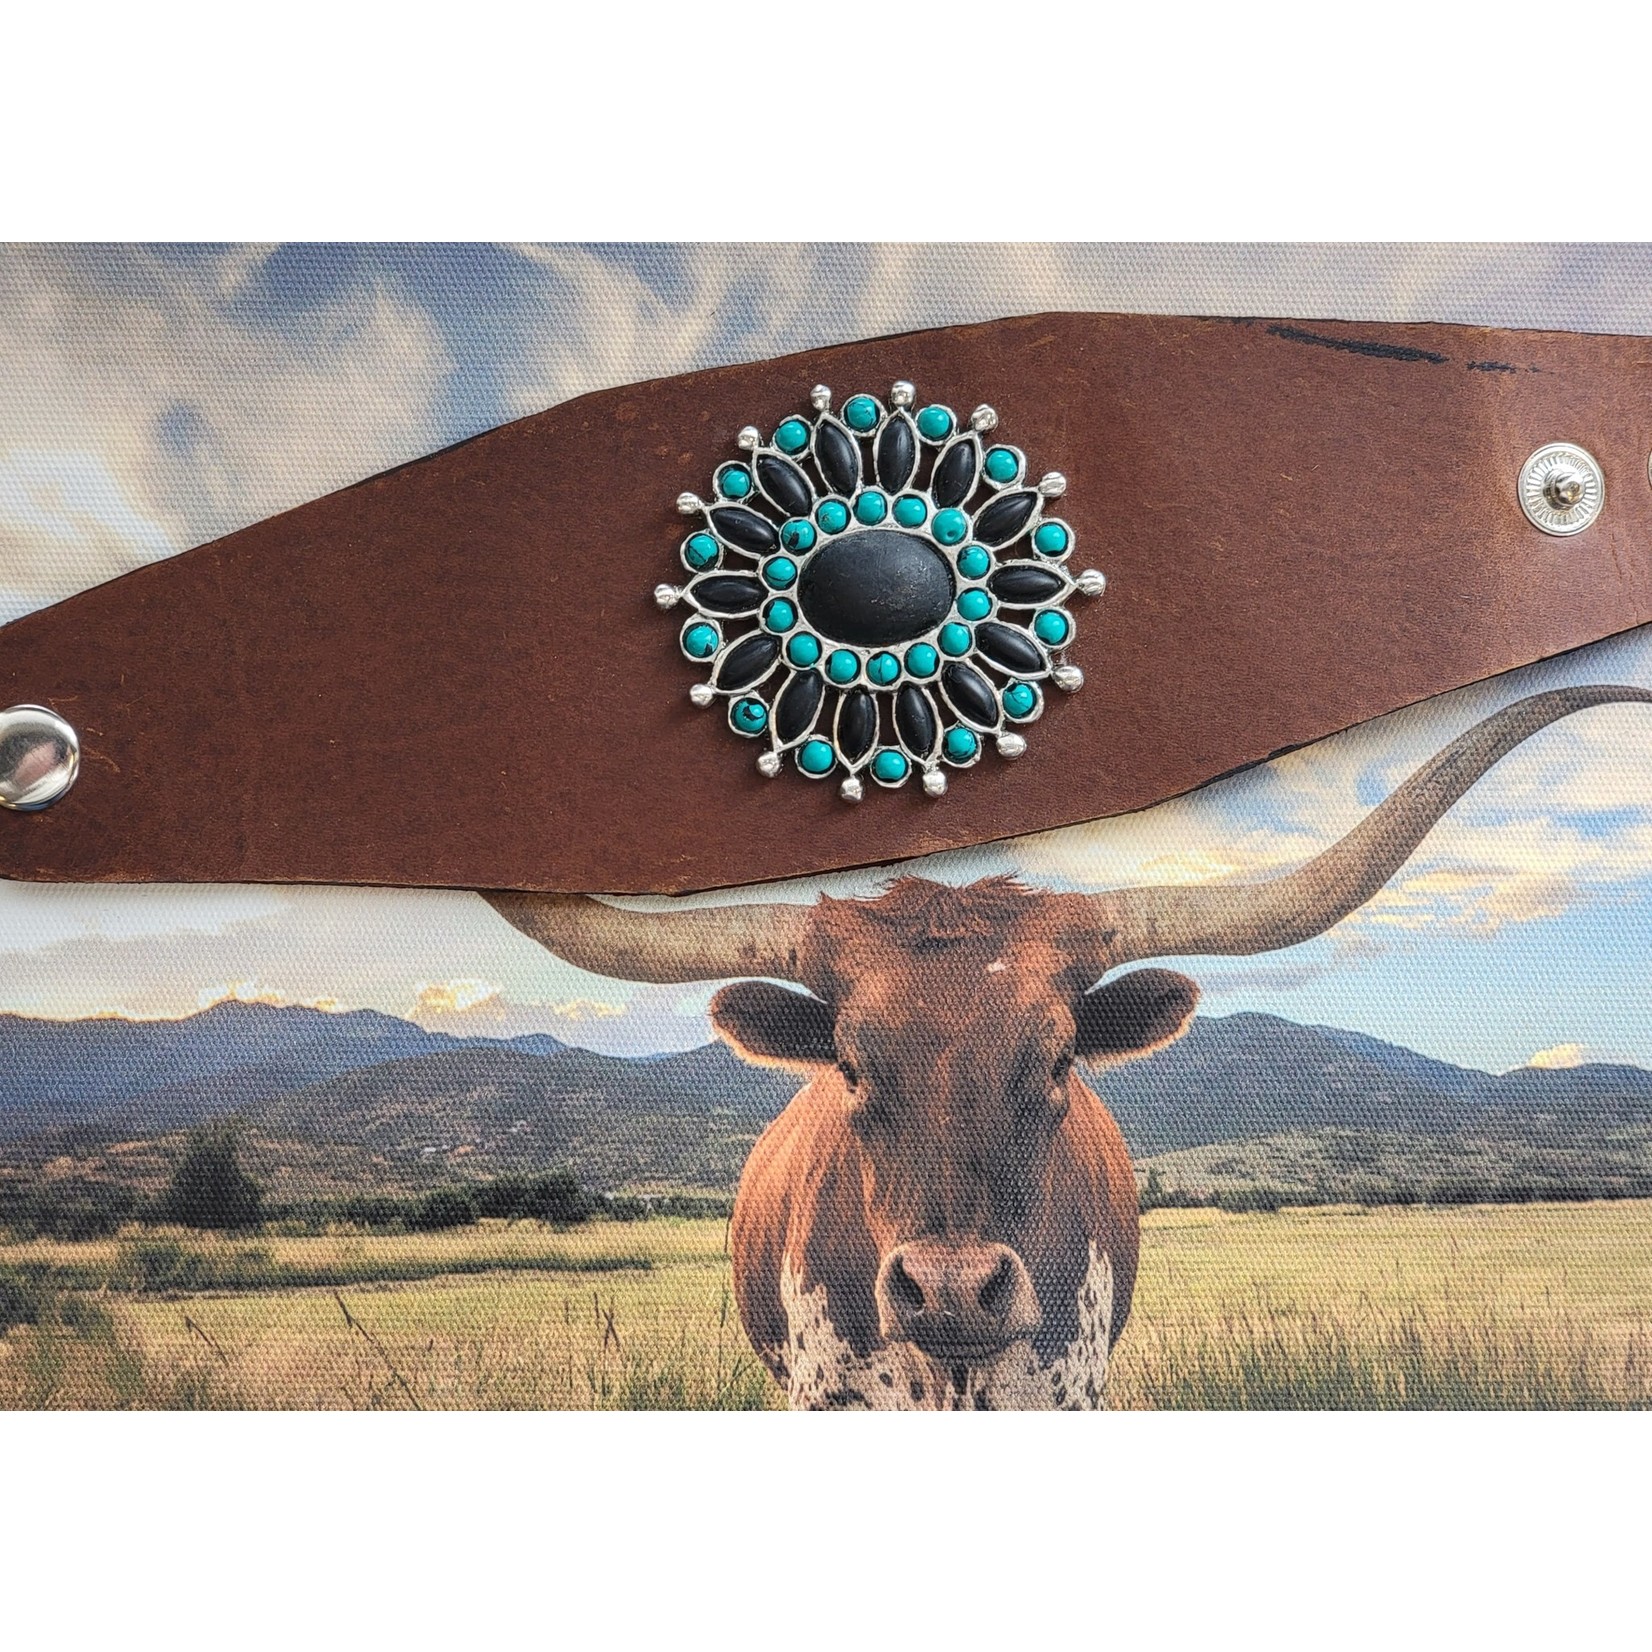 Cowboy Trail Leather Cuff Bracelet